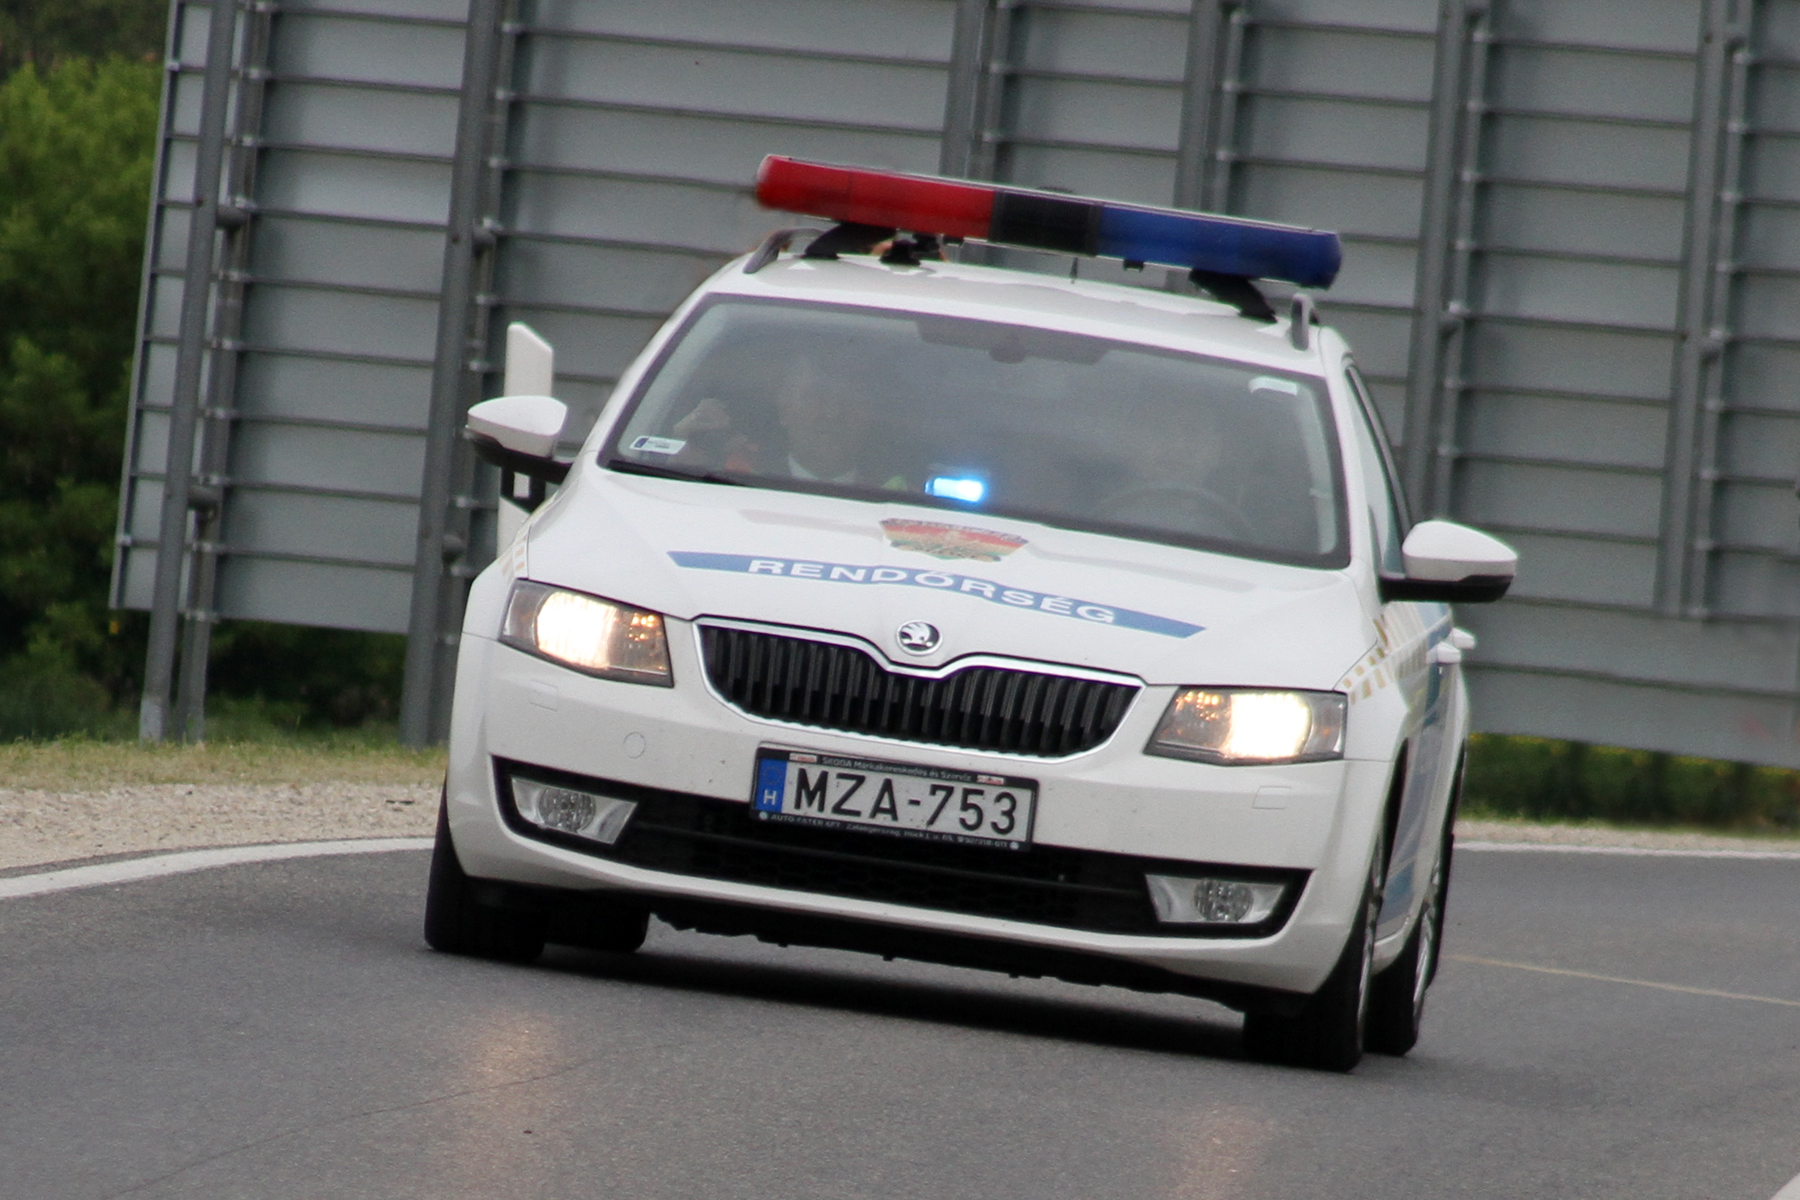 Gátlástalanul előzgető sofőrt kapcsoltak le a rendőrök Balatonalmádinál (videó)